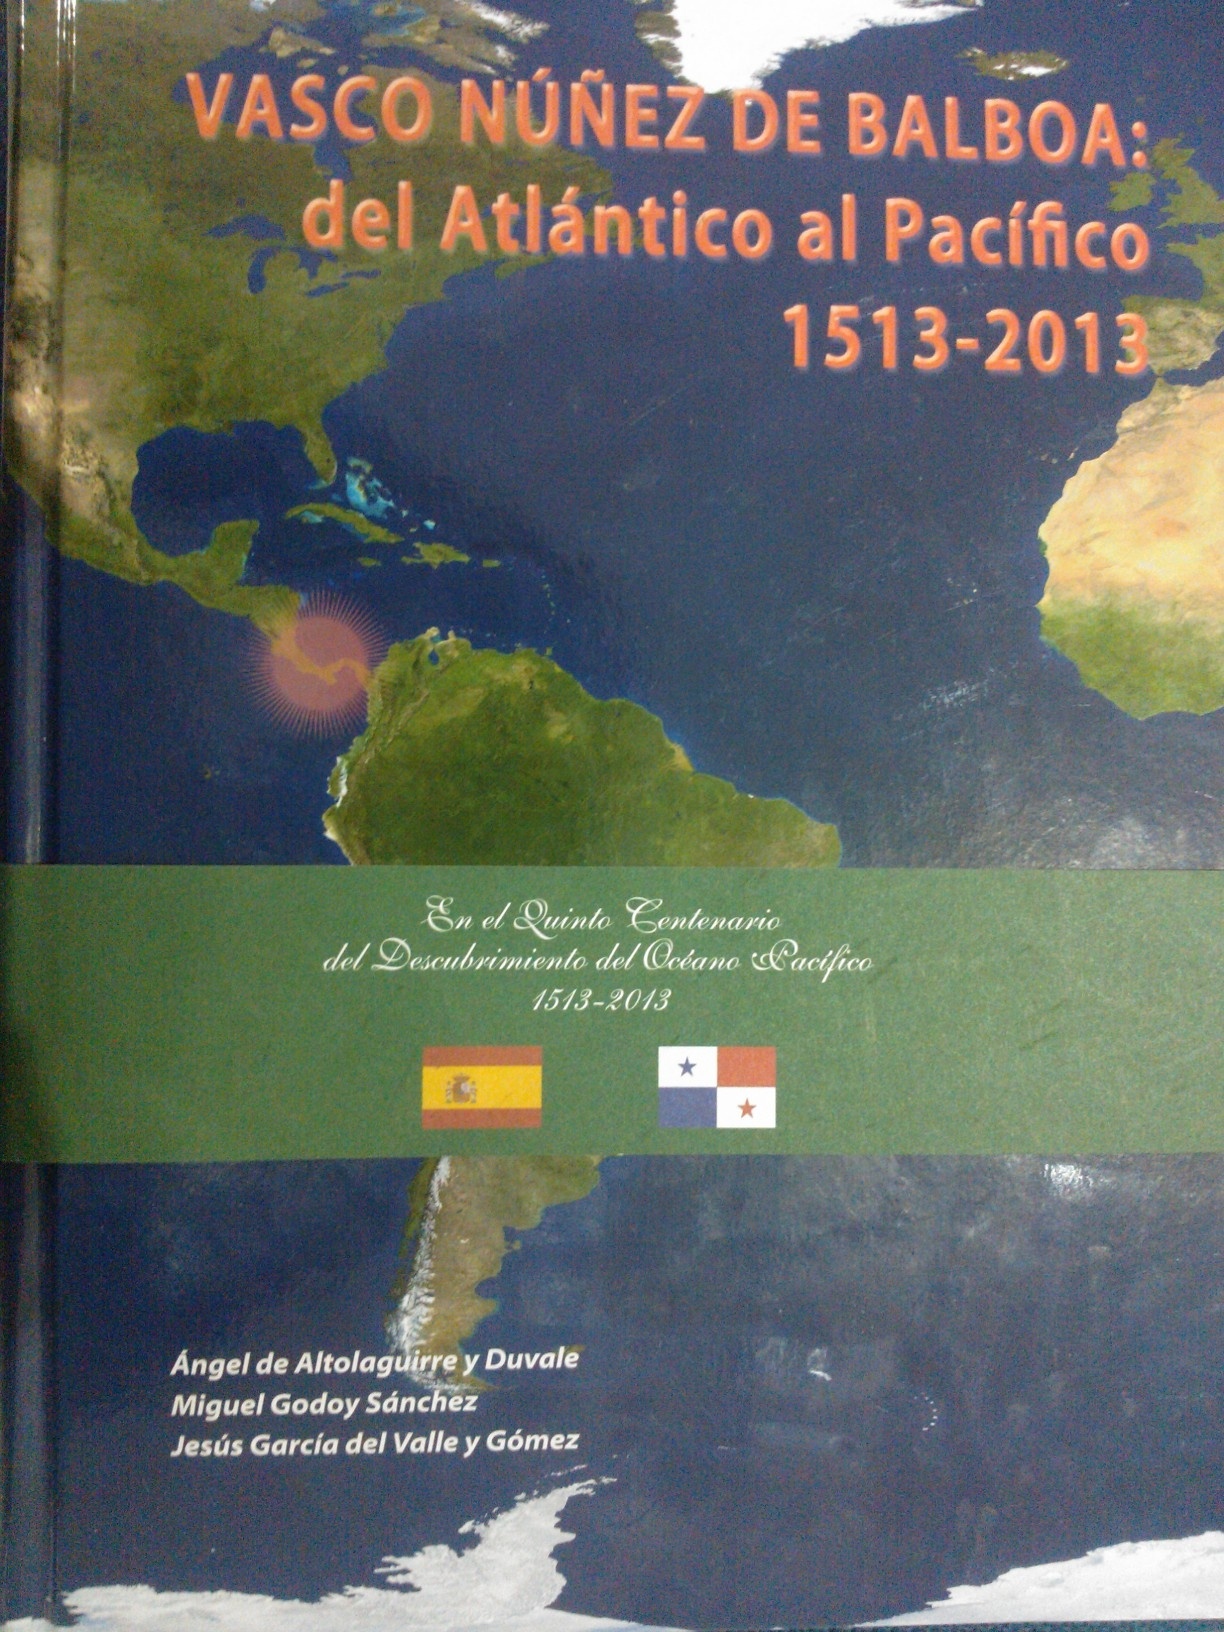 Vasco Núñez de Balboa "del atlántico al Pacífico, 1513-2013"